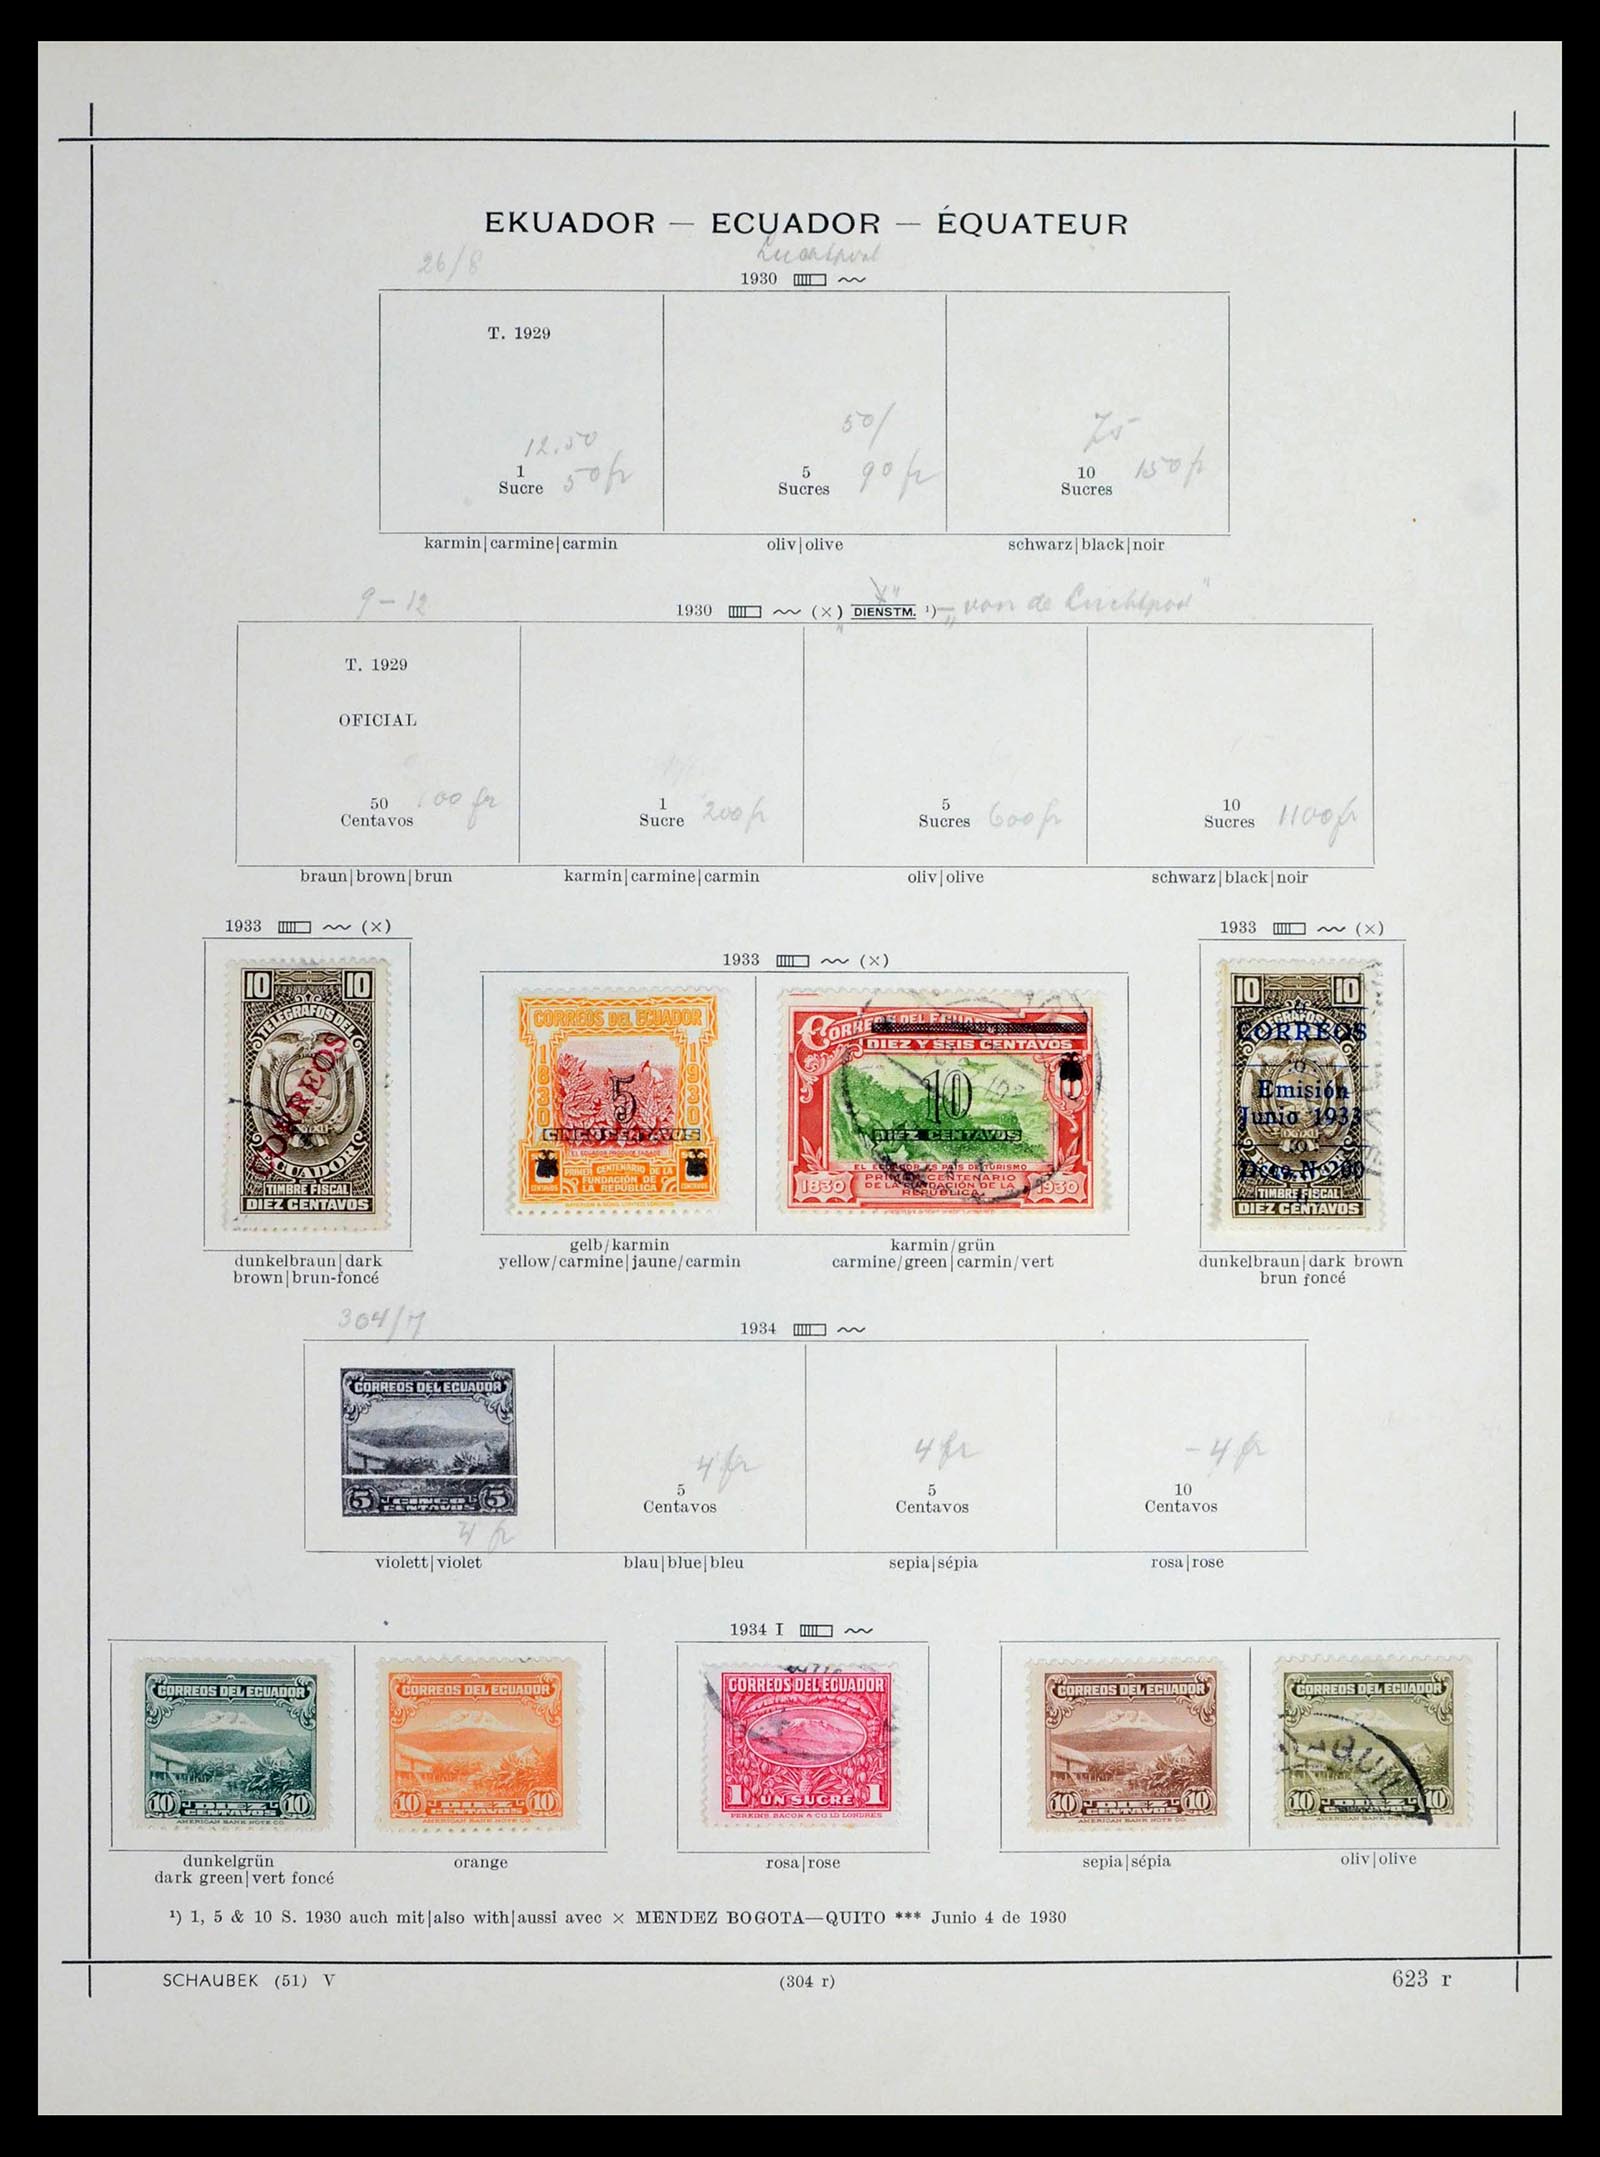 39456 0047 - Stamp collection 39456 Ecuador 1865-1960.